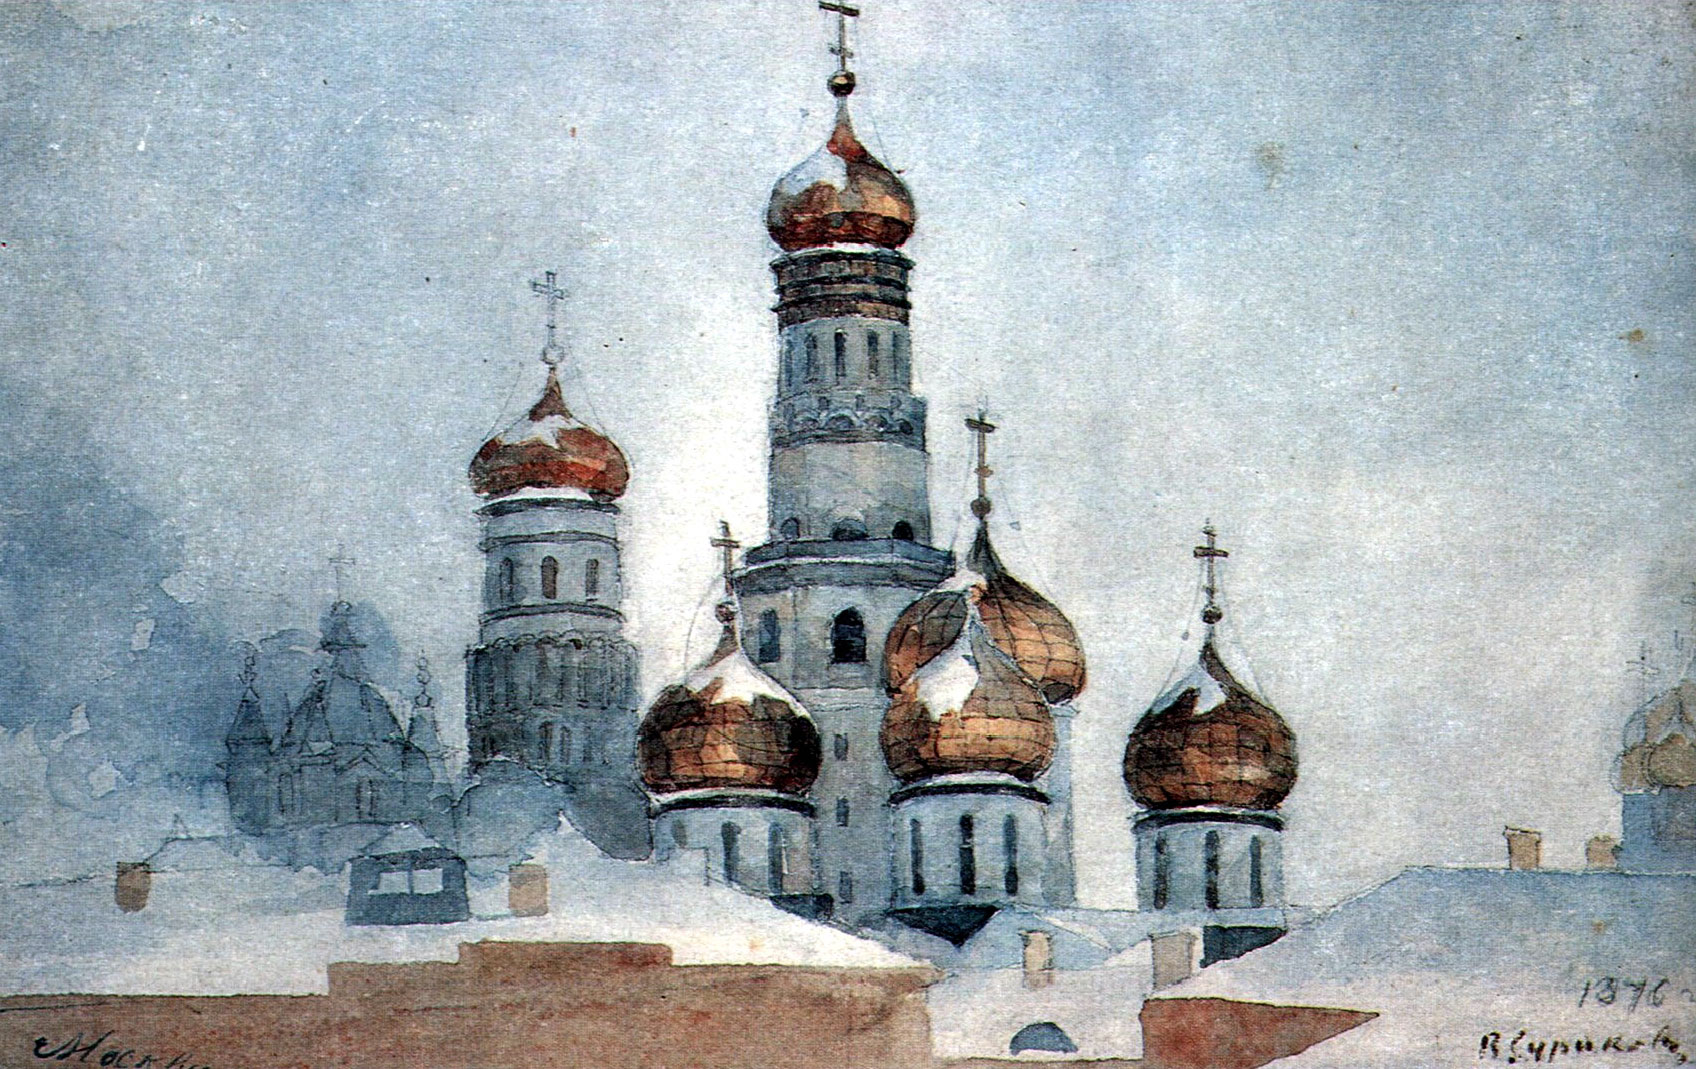 Belfry Ivan the Great (1876).